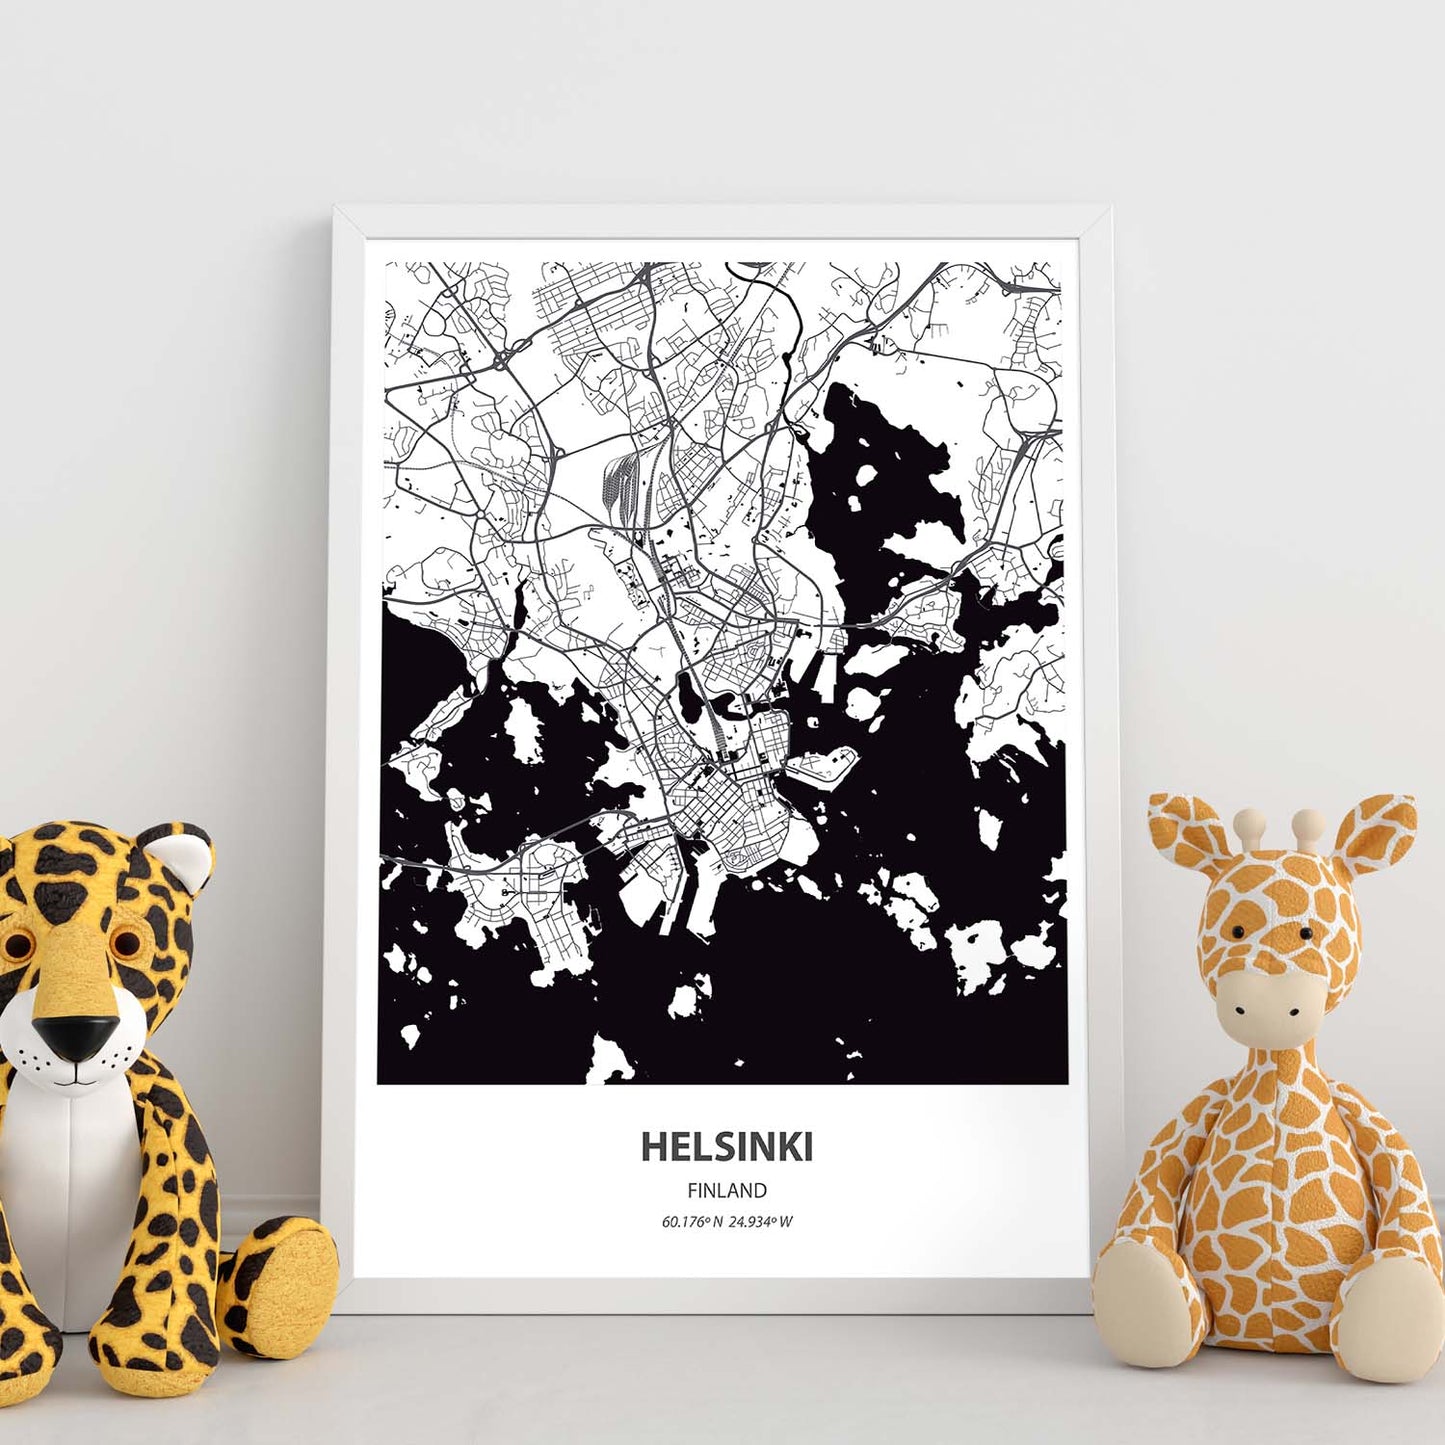 Poster con mapa de Helsinki - Finlandia. Láminas de ciudades del norte de Europa con mares y ríos en color negro.-Artwork-Nacnic-Nacnic Estudio SL